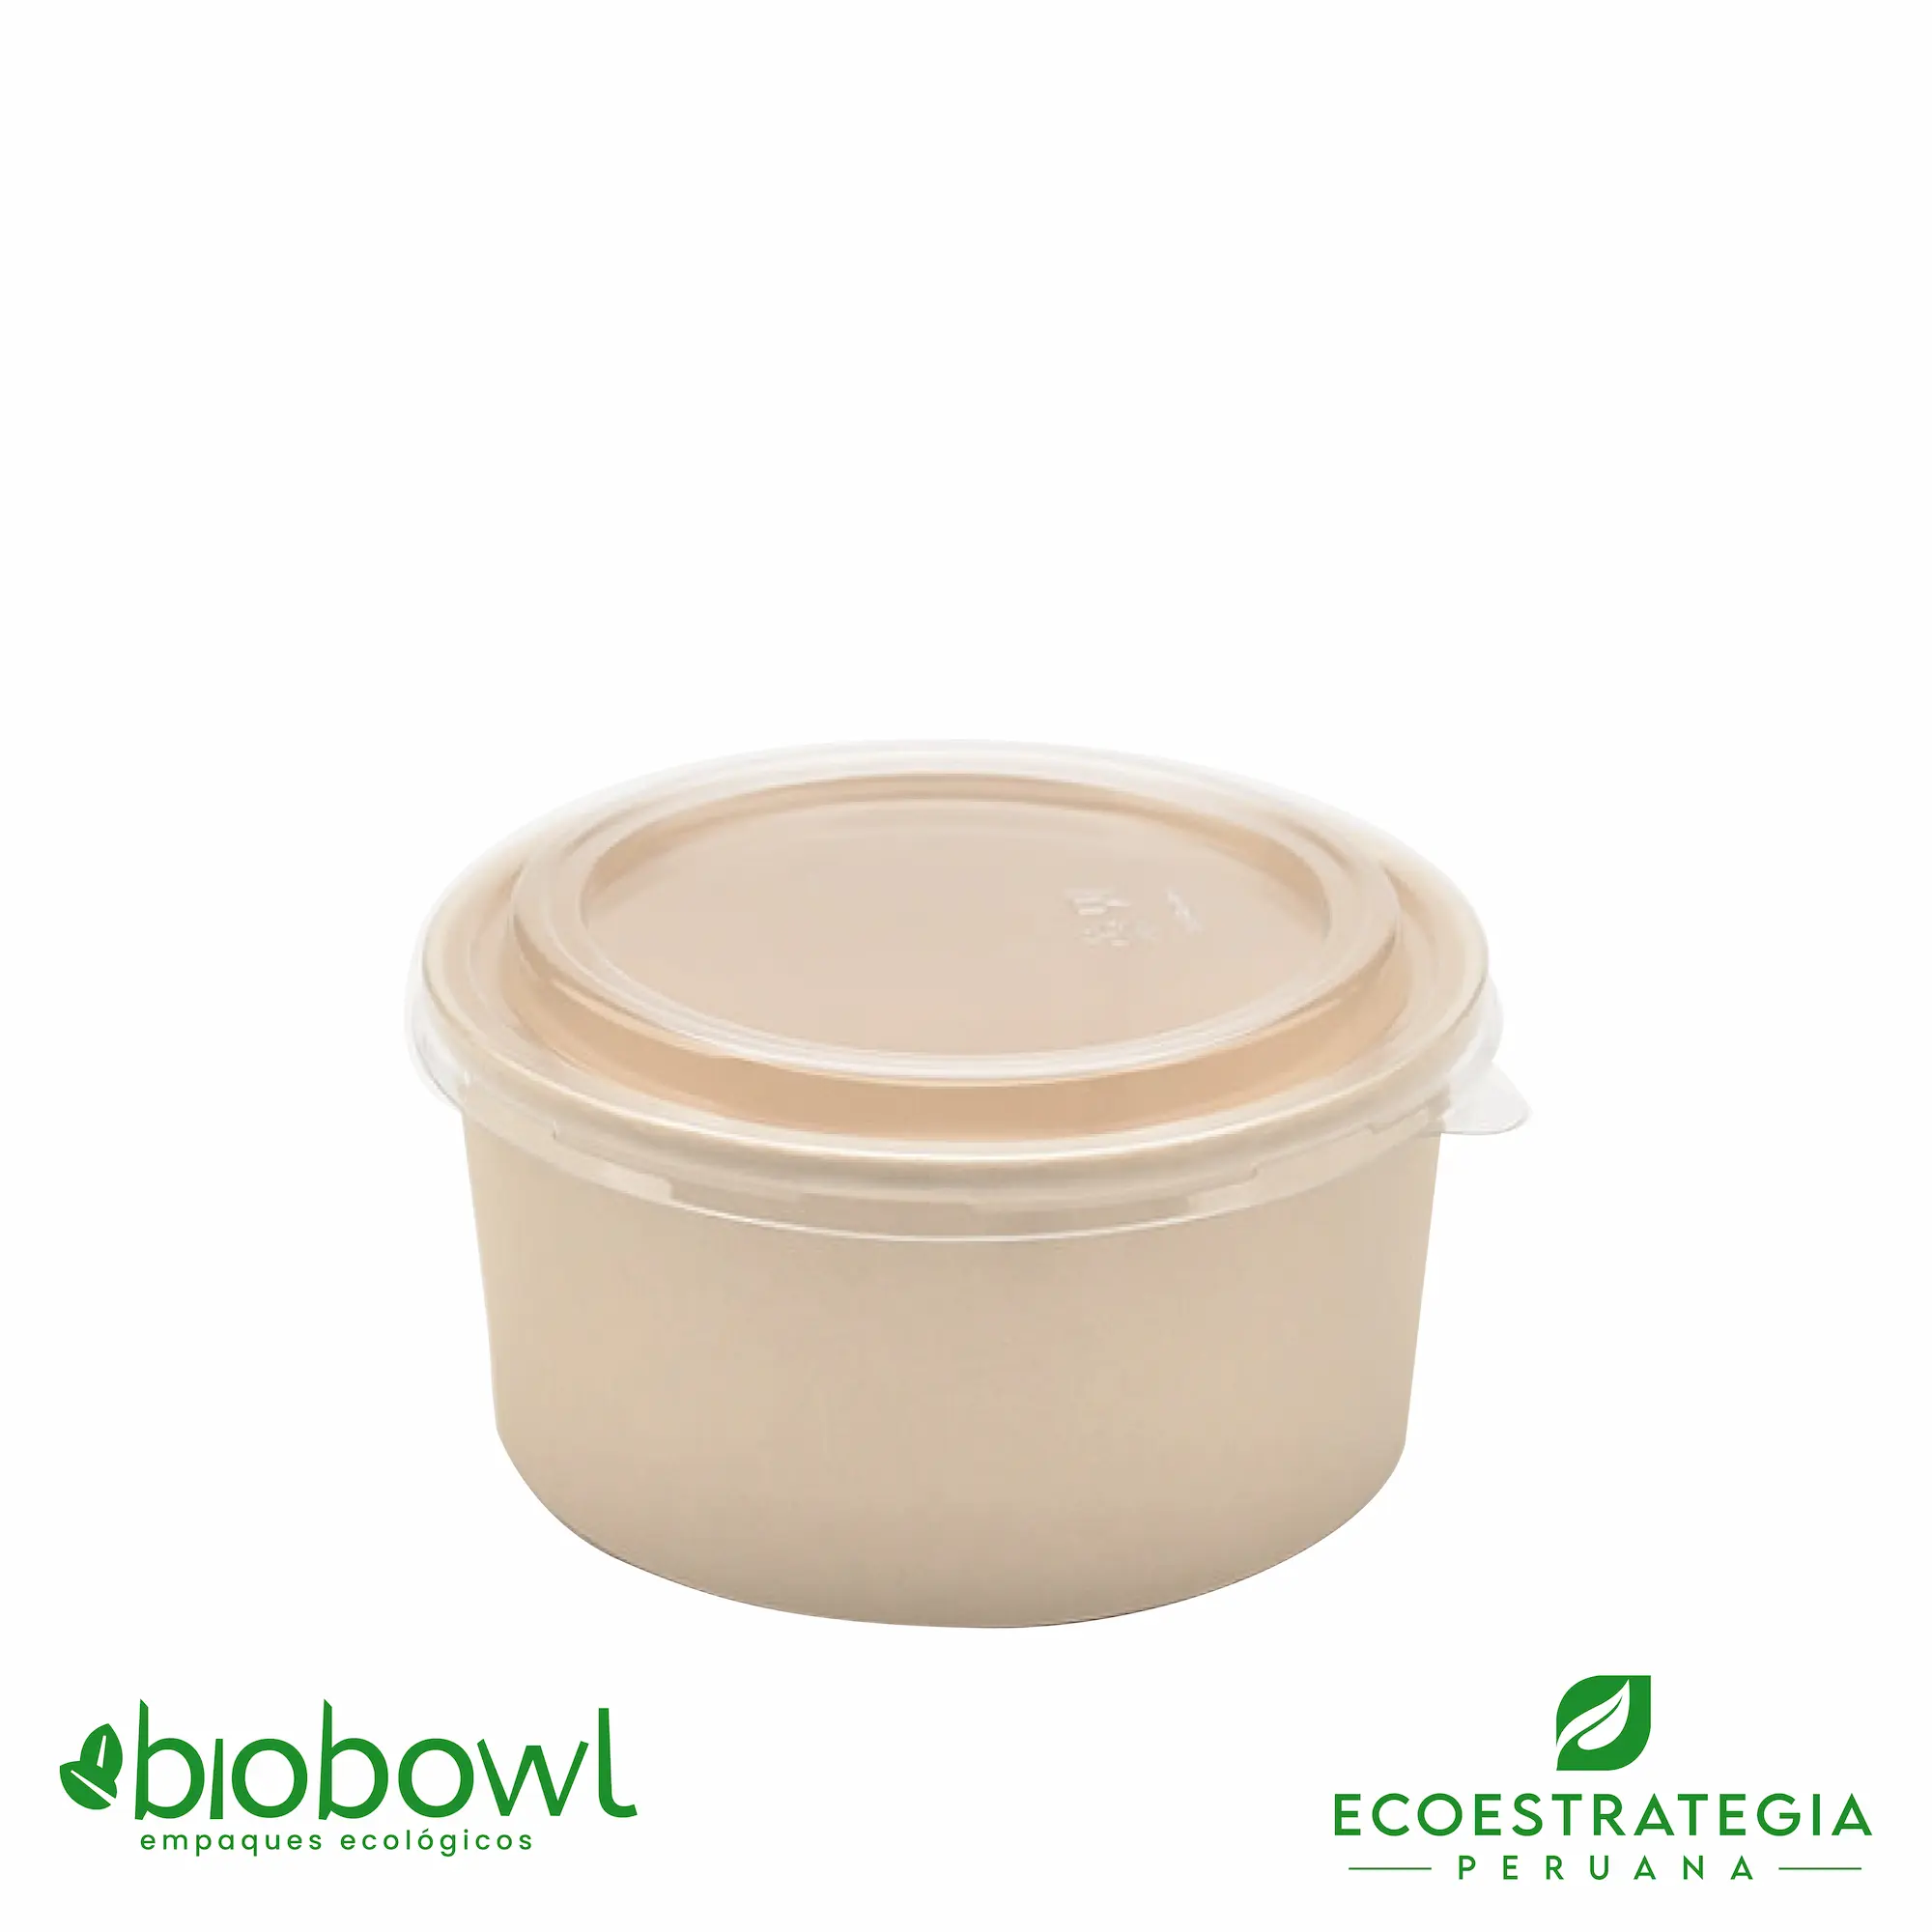 Este envase biodegradable es un bowl 600ml hecho de bambú. Envases descartables con gramaje ideal, cotiza tus vasos para helados, táper para sopa, bowls salad